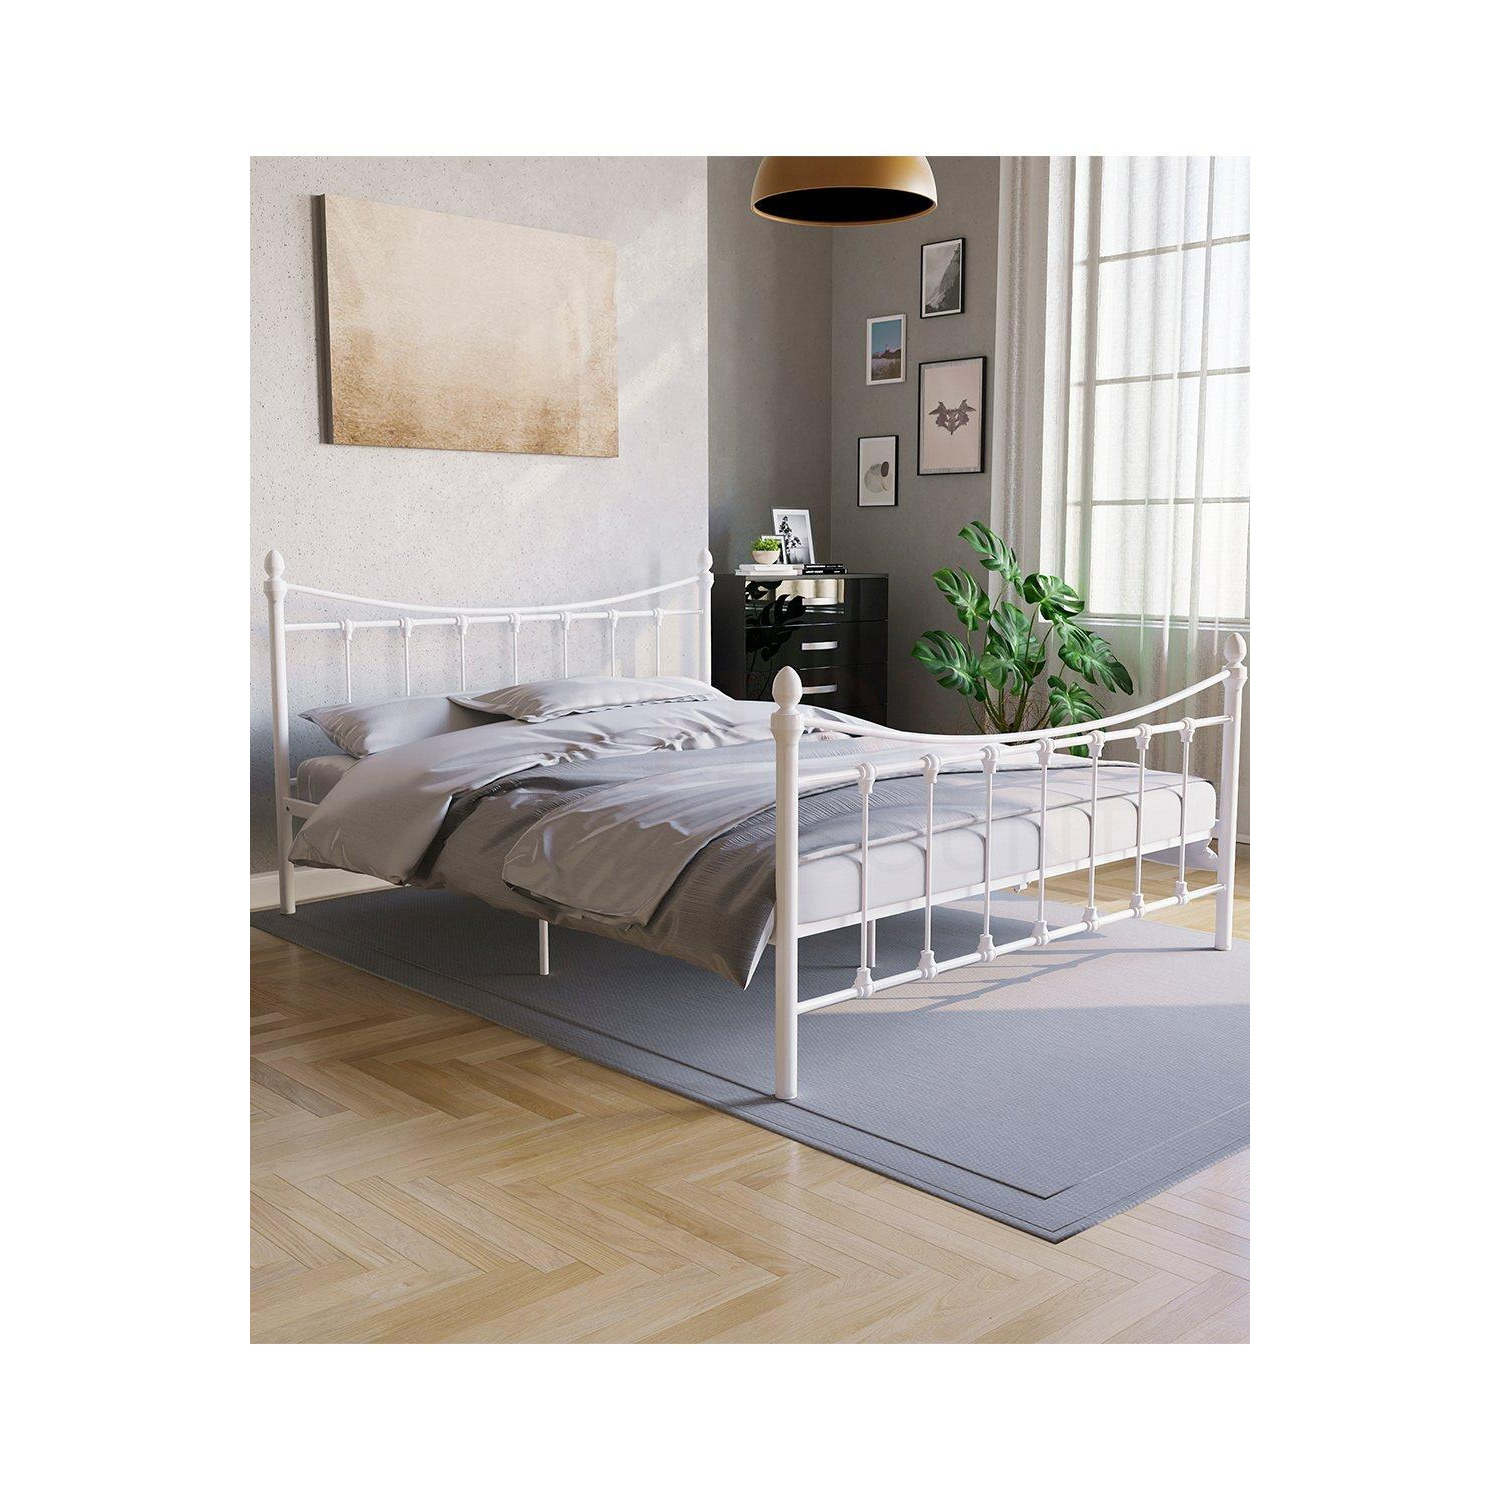 Vida Designs Paris King Size Metal Bed Frame 985 x 1590 x 2095 mm - image 1